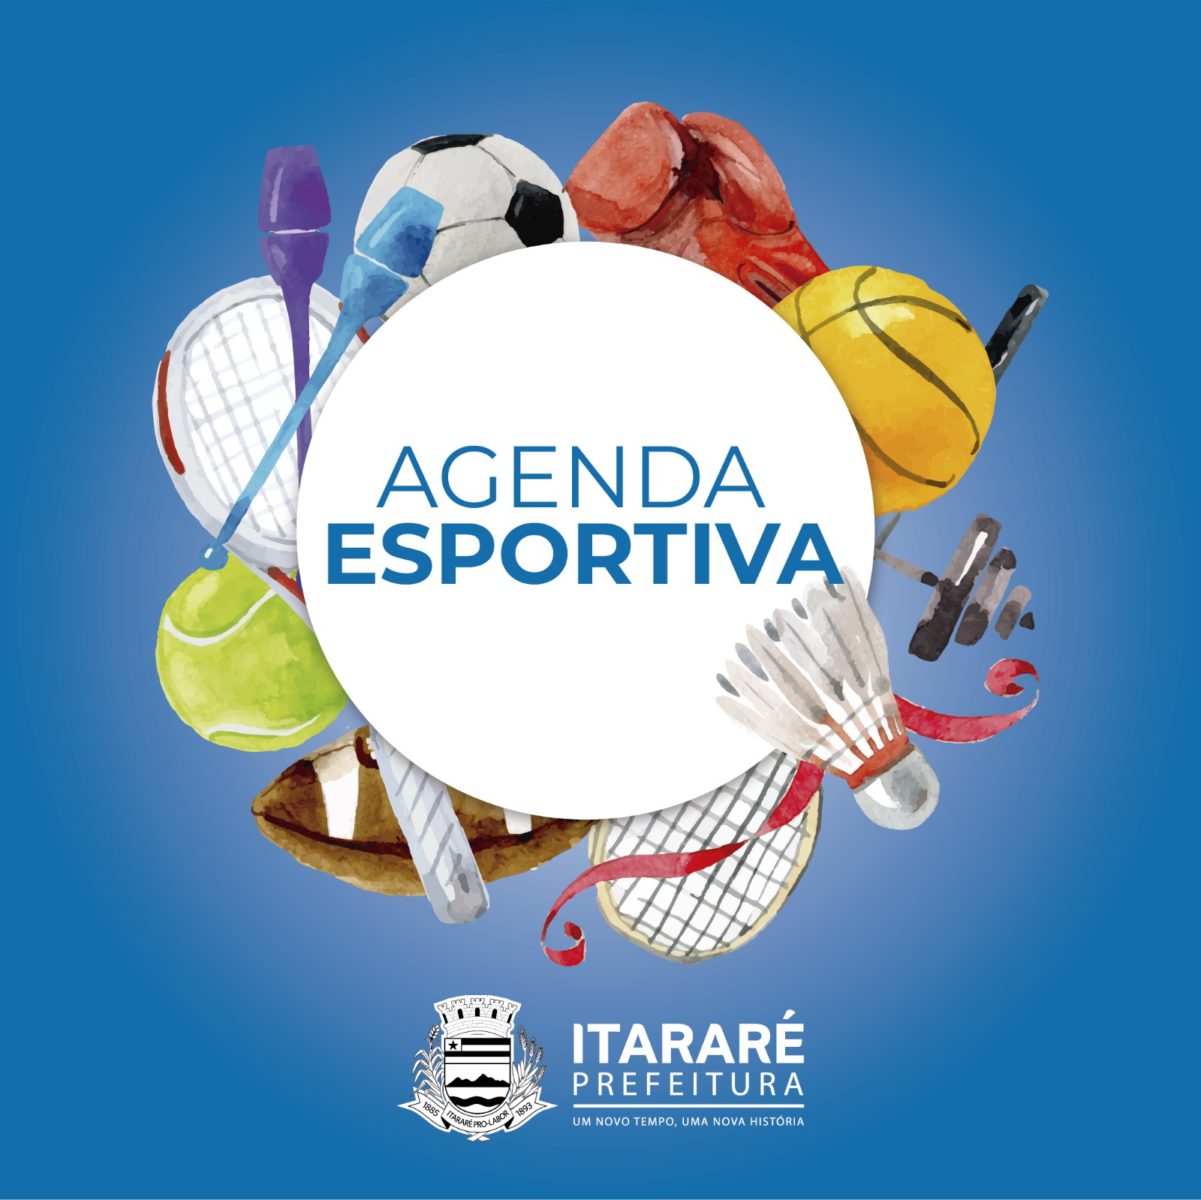 Agenda Esportiva: Itararé (SP) sedia etapa da Liga Sorocaba de Voleibol neste fim de semana